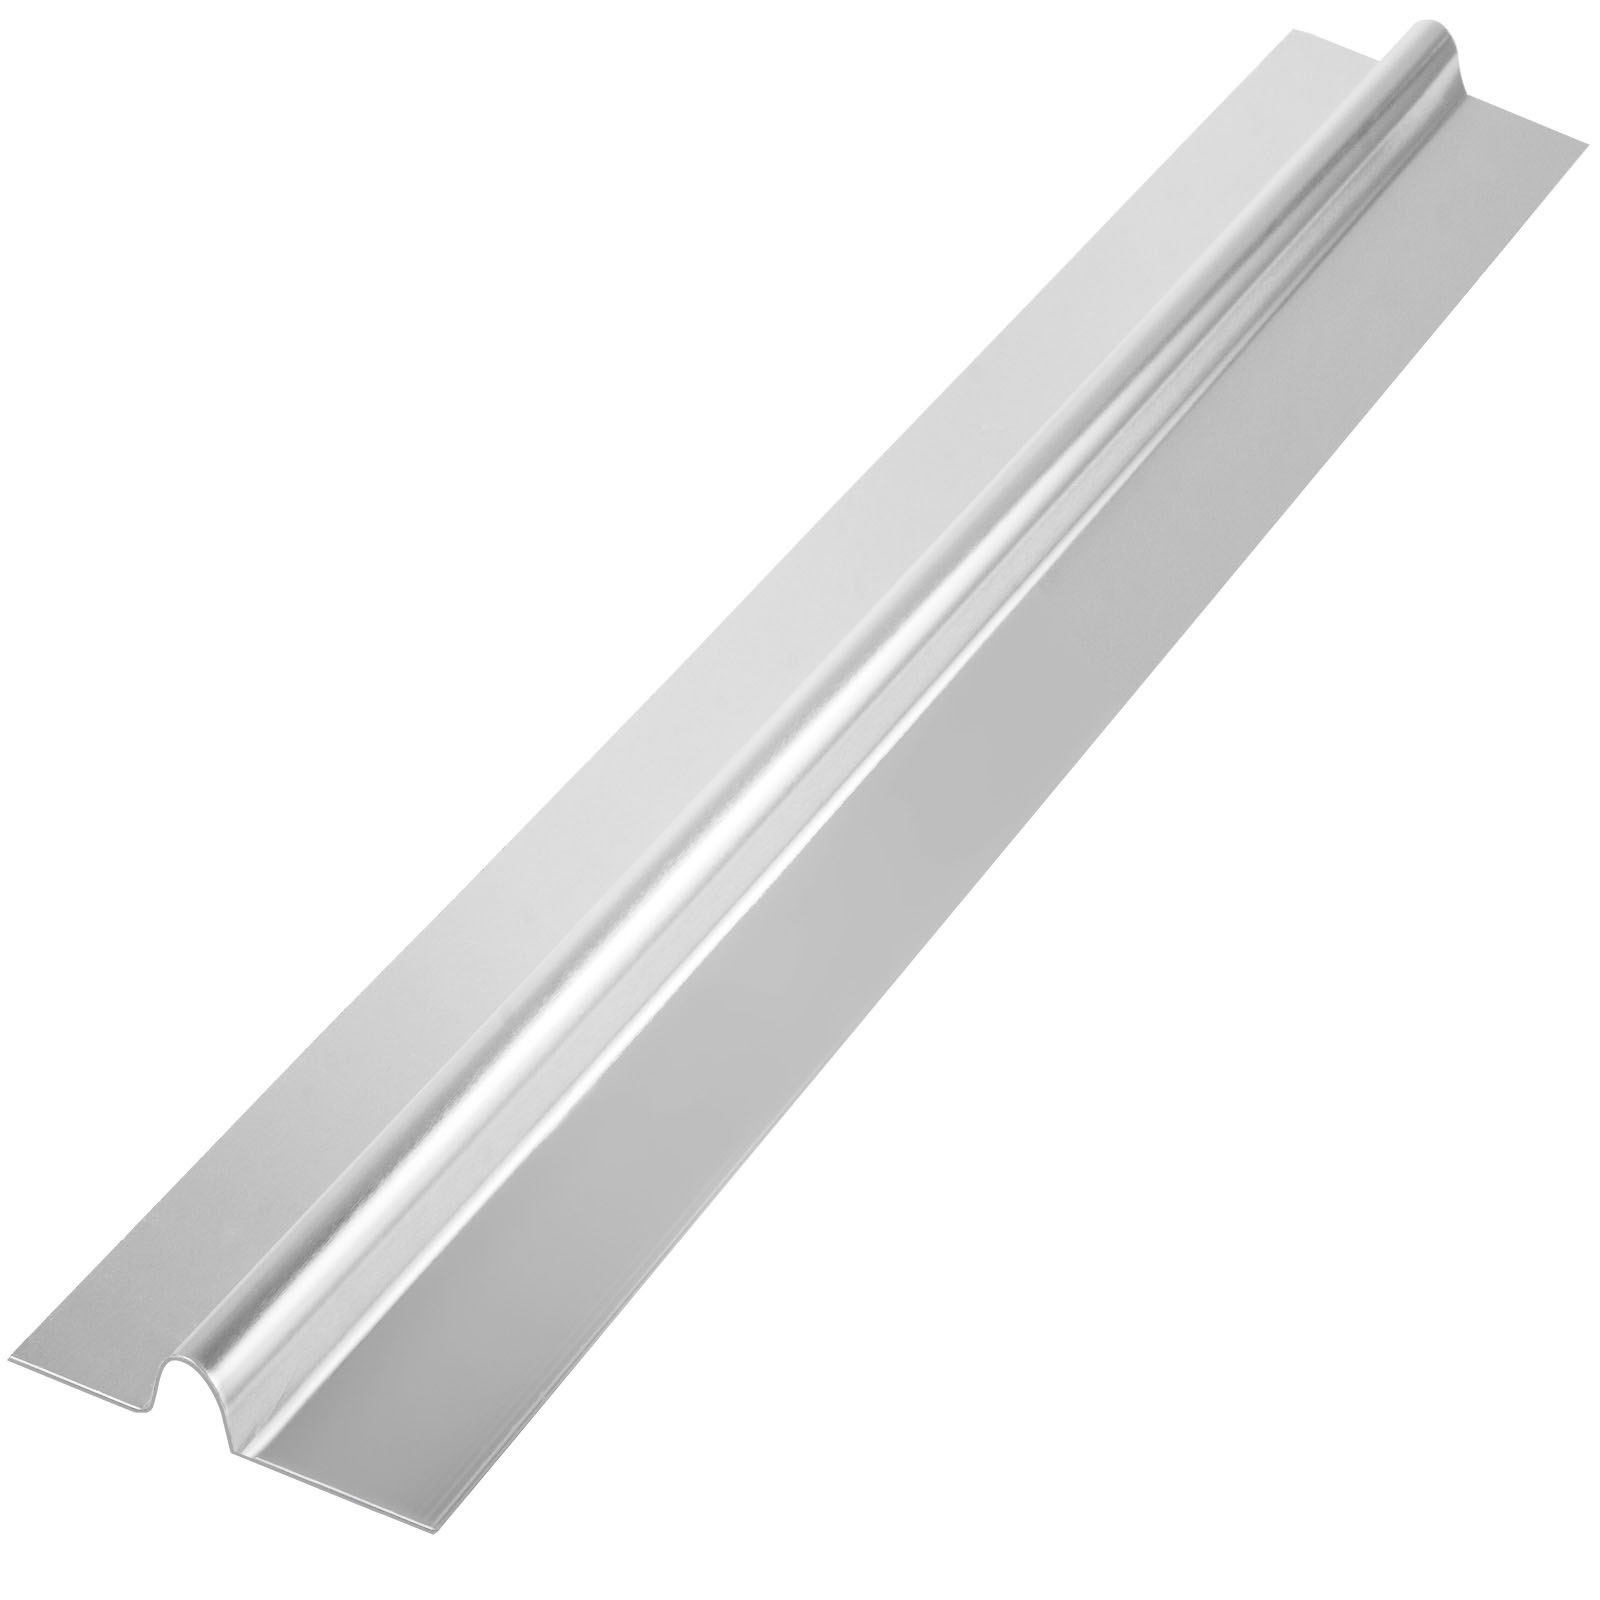 4ft Aluminum Radiant Floor Heat Transfer Plates for 1/2" PEX Tubing 100 